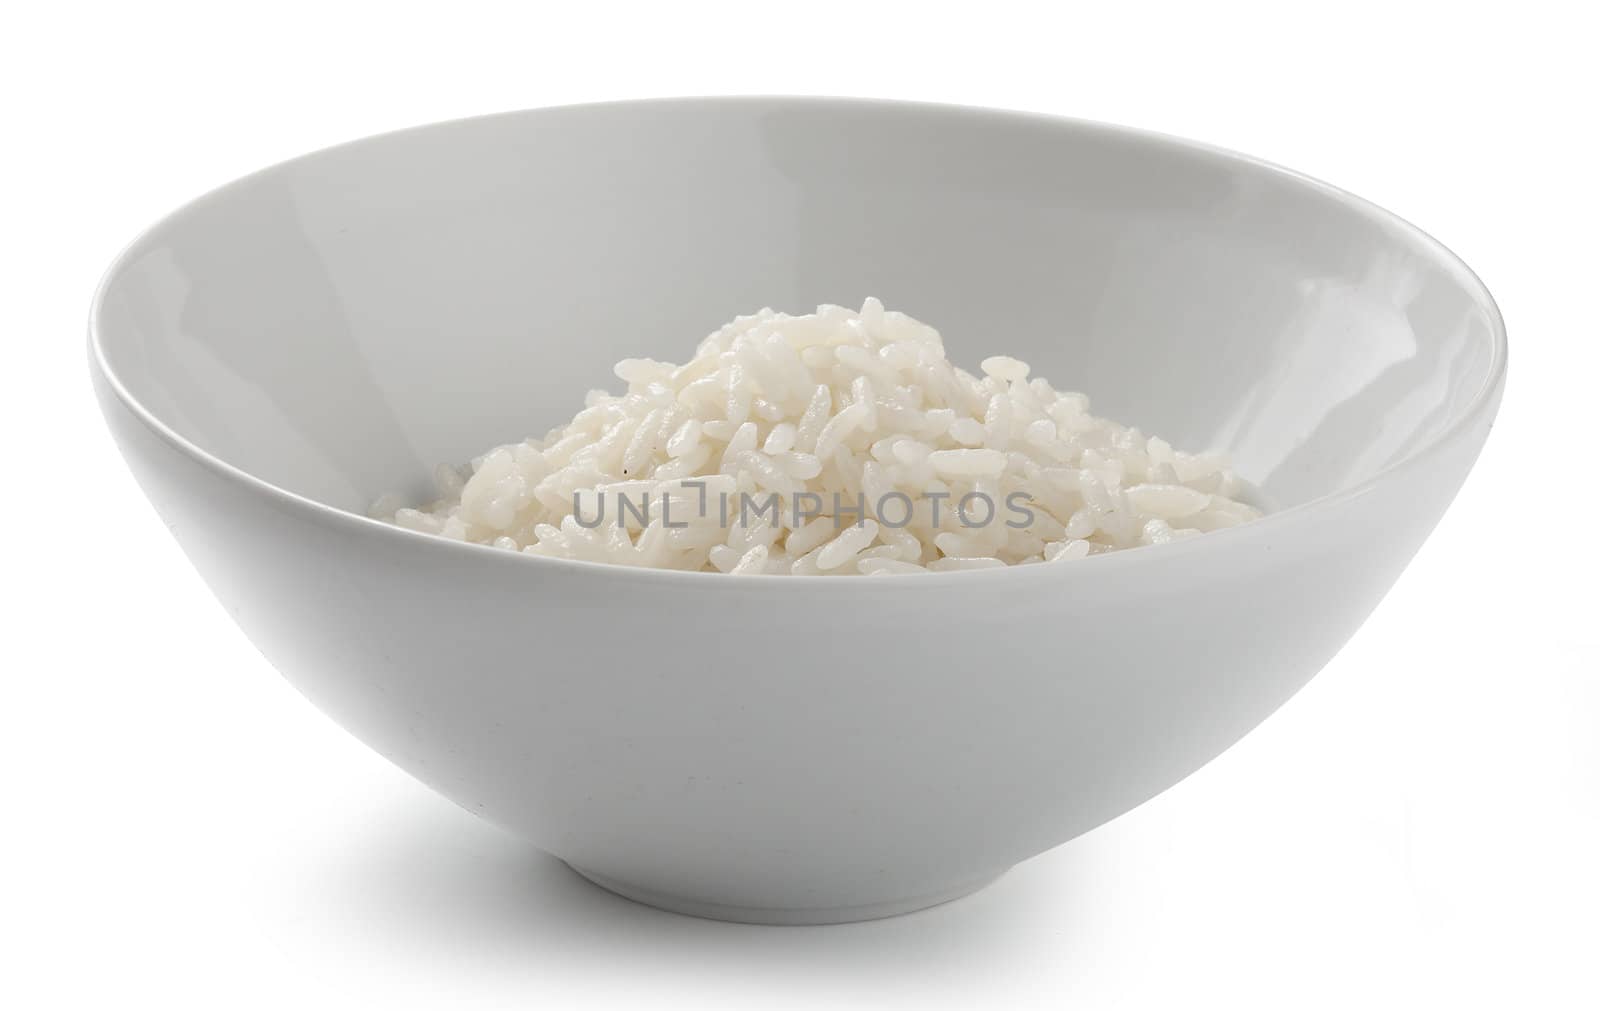 Cream of rise in the white ceramic bowl